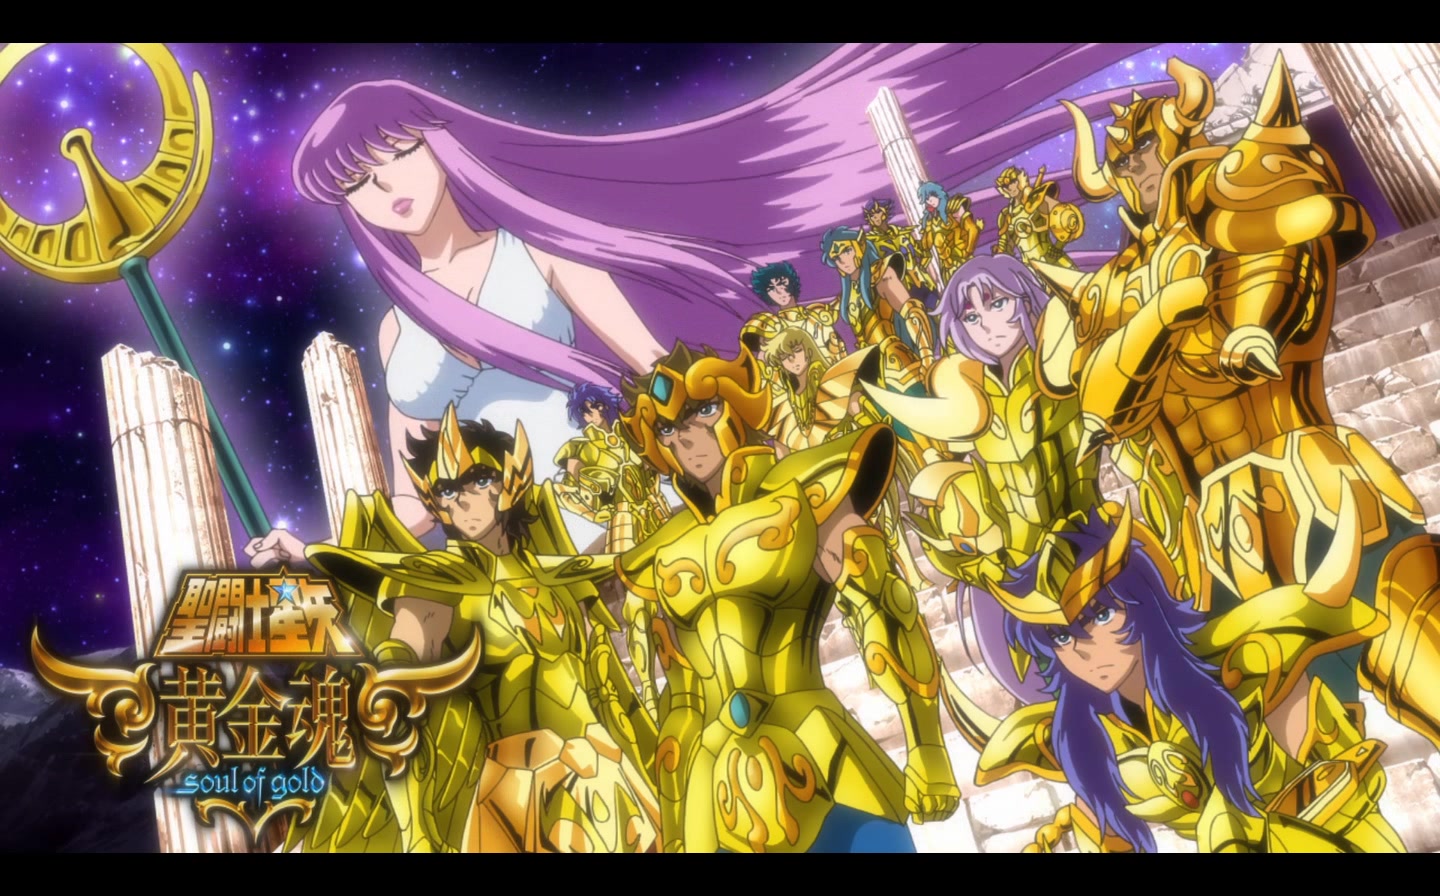 Cavaleiros do Zodiaco alma de ouro Episódio 1 Reviva Lenda Dourada